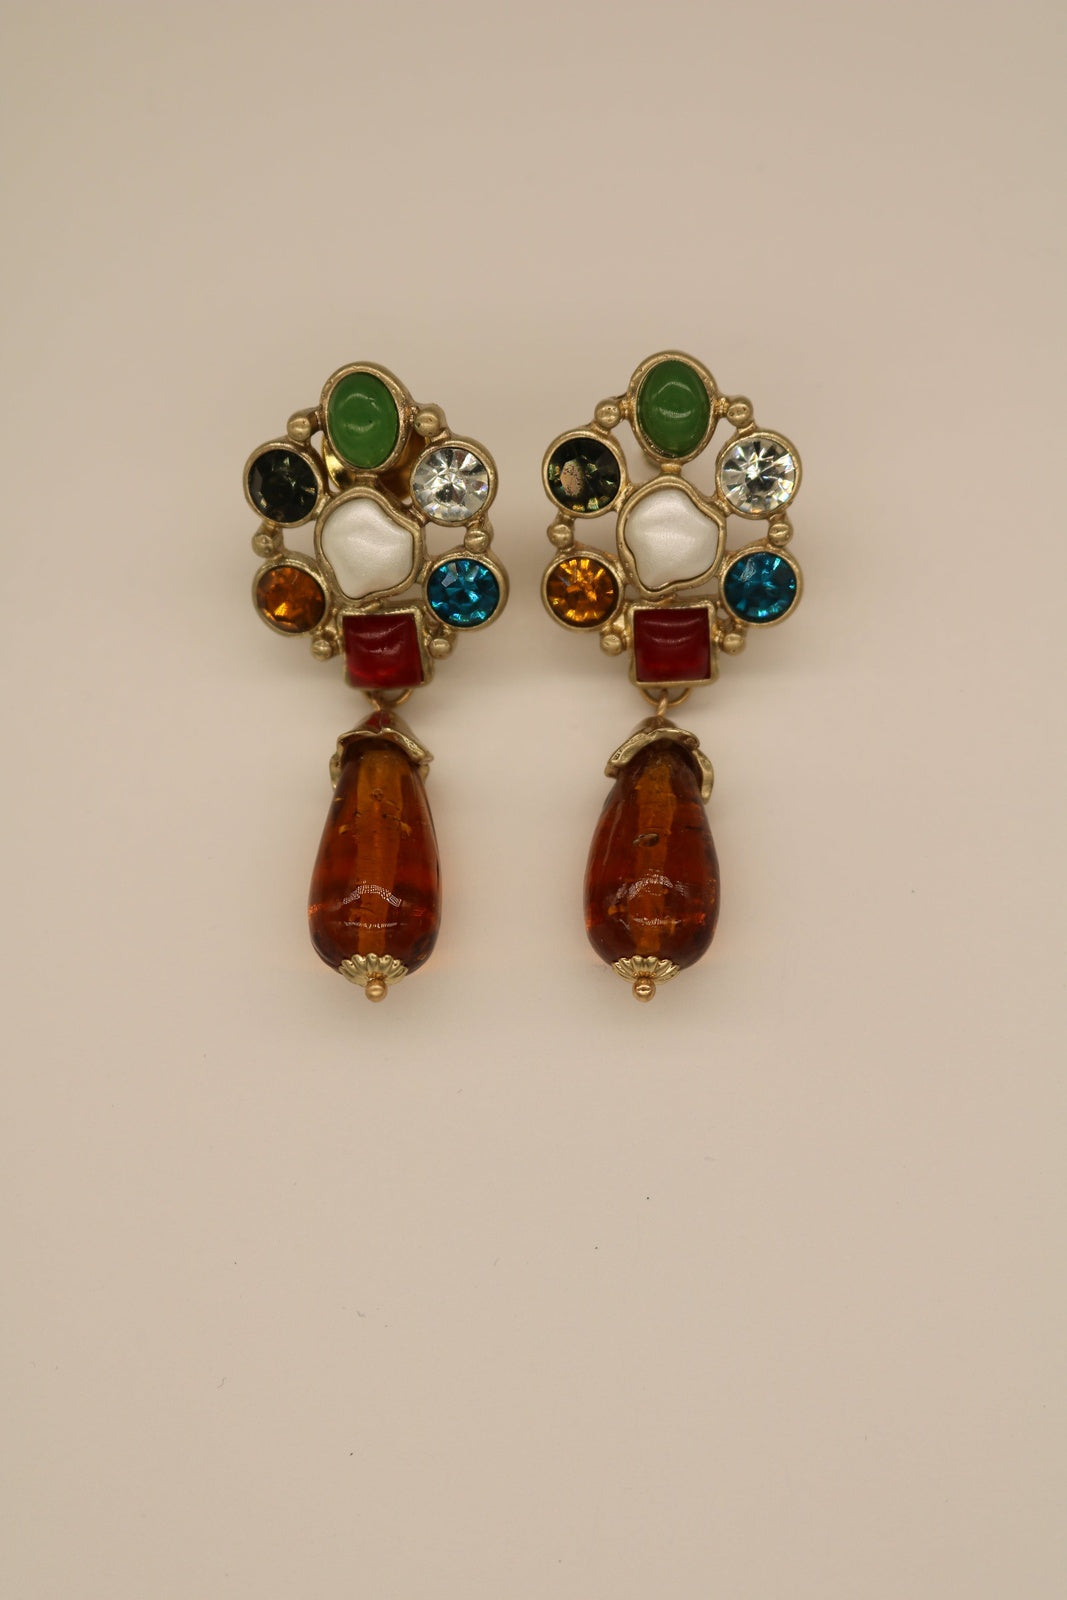 Byzantine glazed glass earring